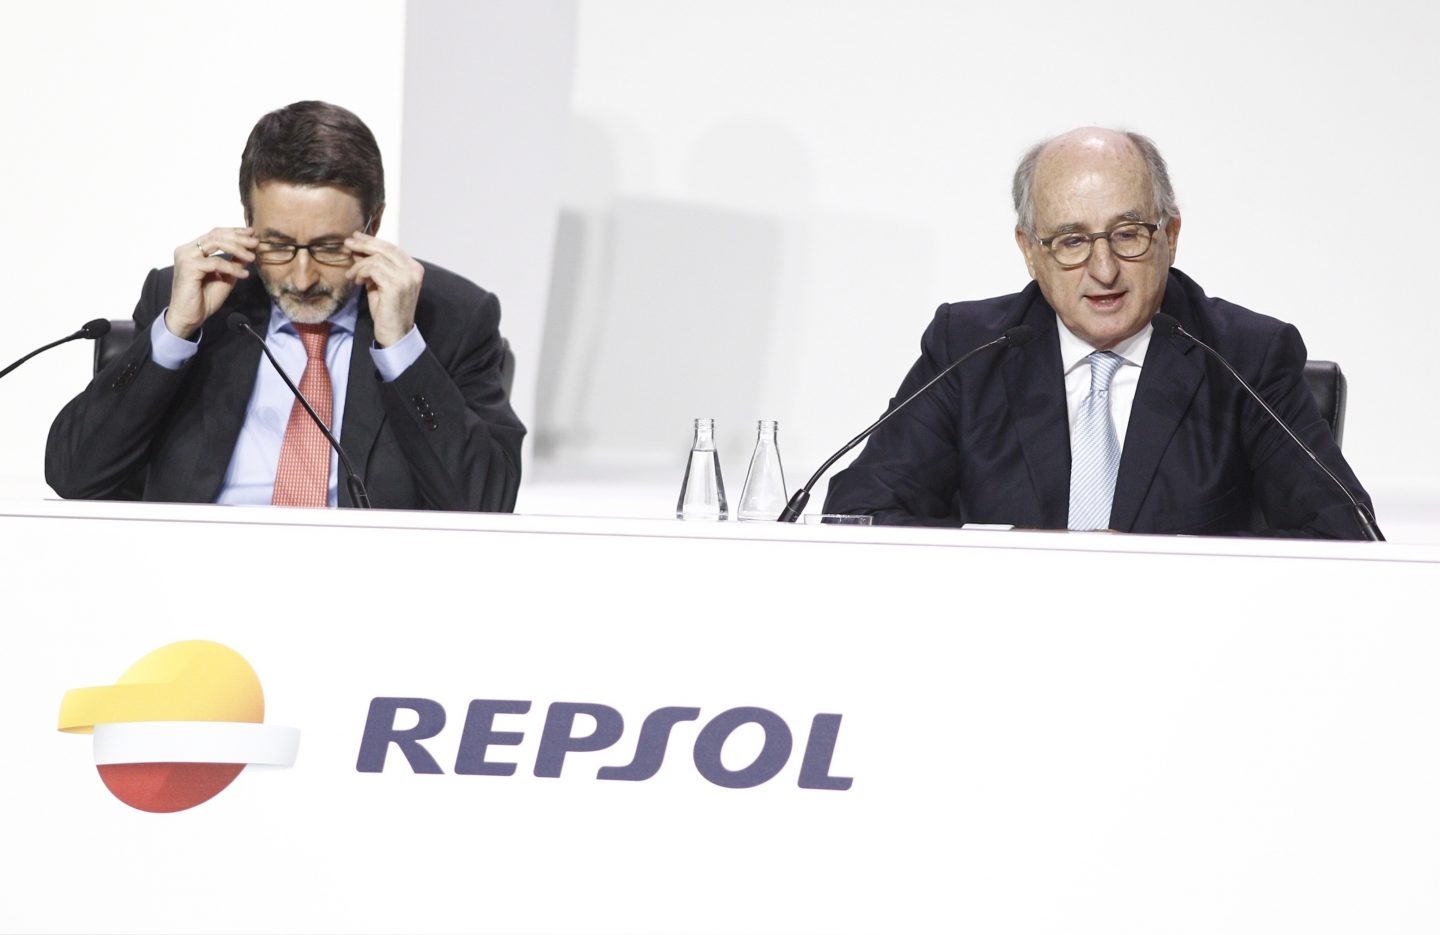 El presidente de Repsol, Antonio Brufau, y el consejero delegado, Josu Jon Imaz, en la junta de accionistas de Repsol.